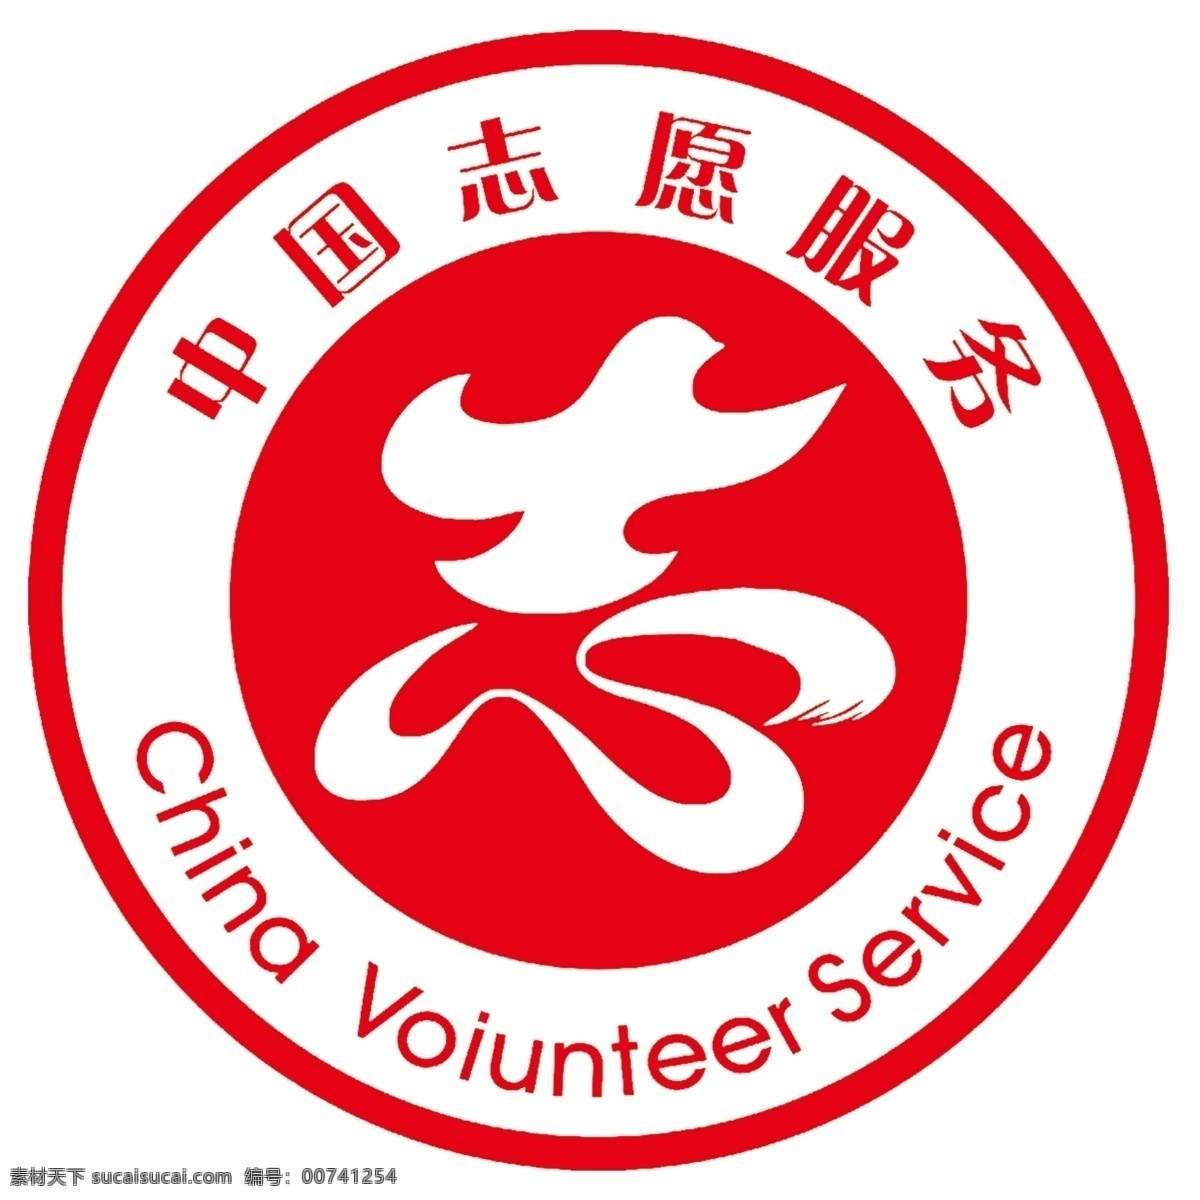 中国志愿服务 中国 志愿 志愿者 服务 公益 标志